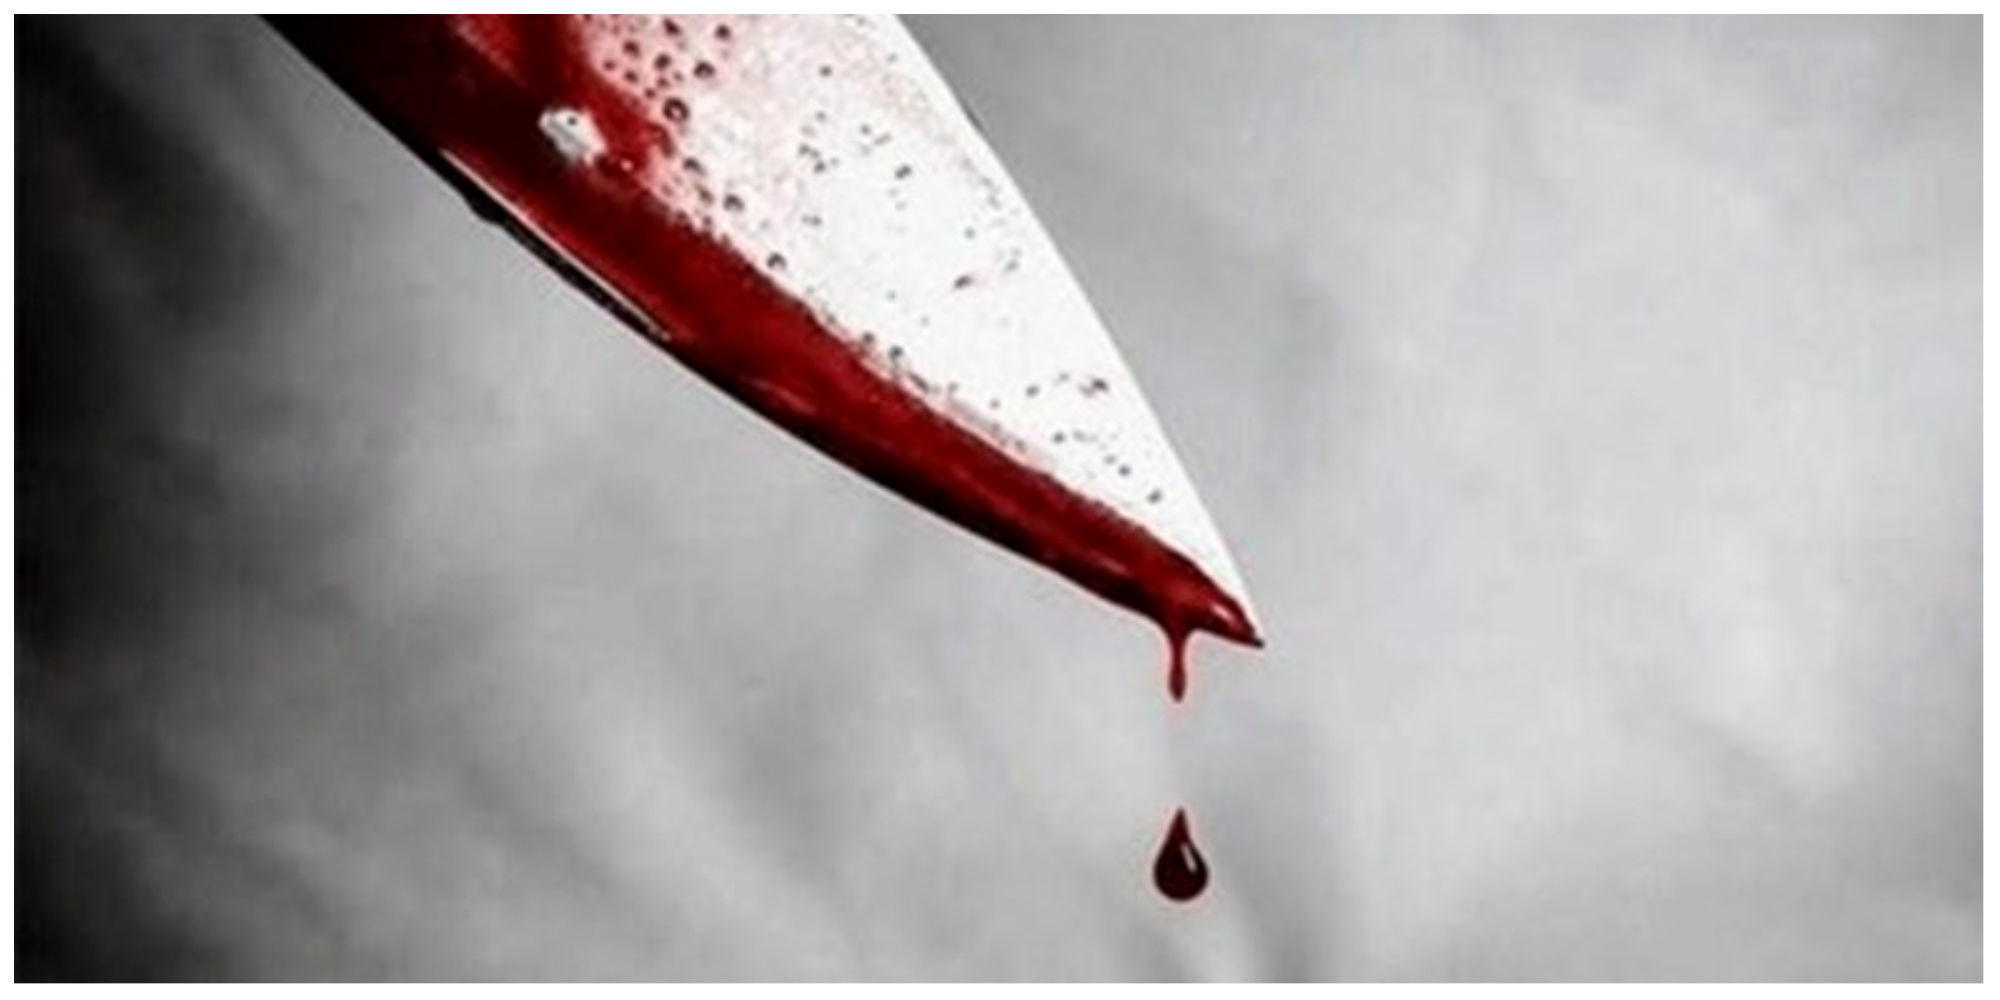 حمله یک دختر ۱۲ ساله به معلم با چاقو